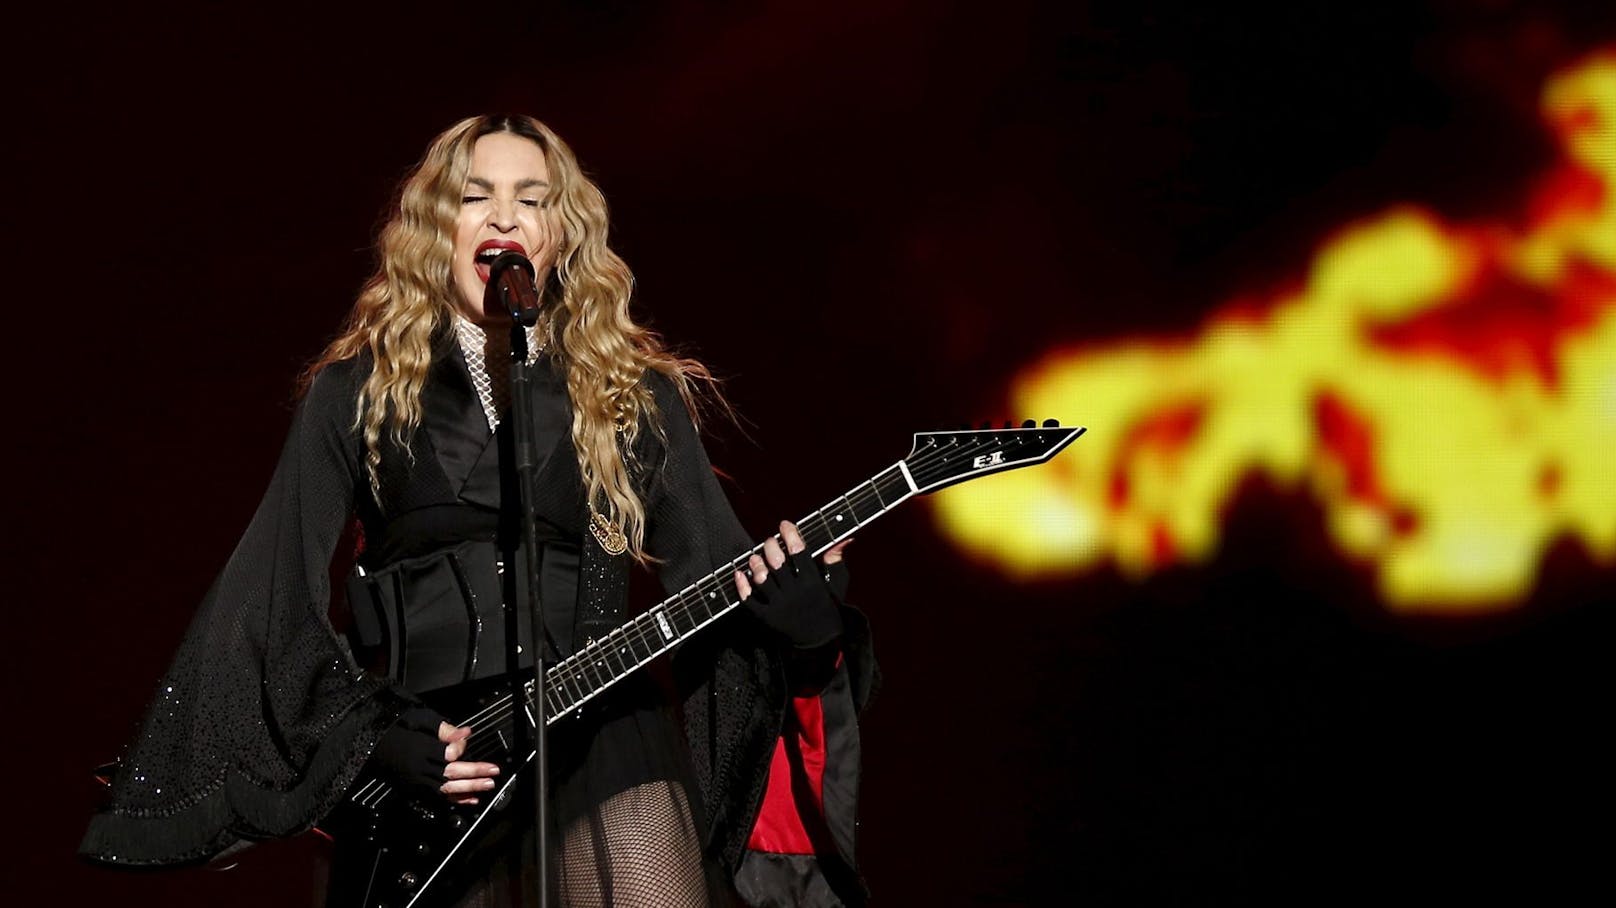 Großer Ärger: Fans verklagen Madonna